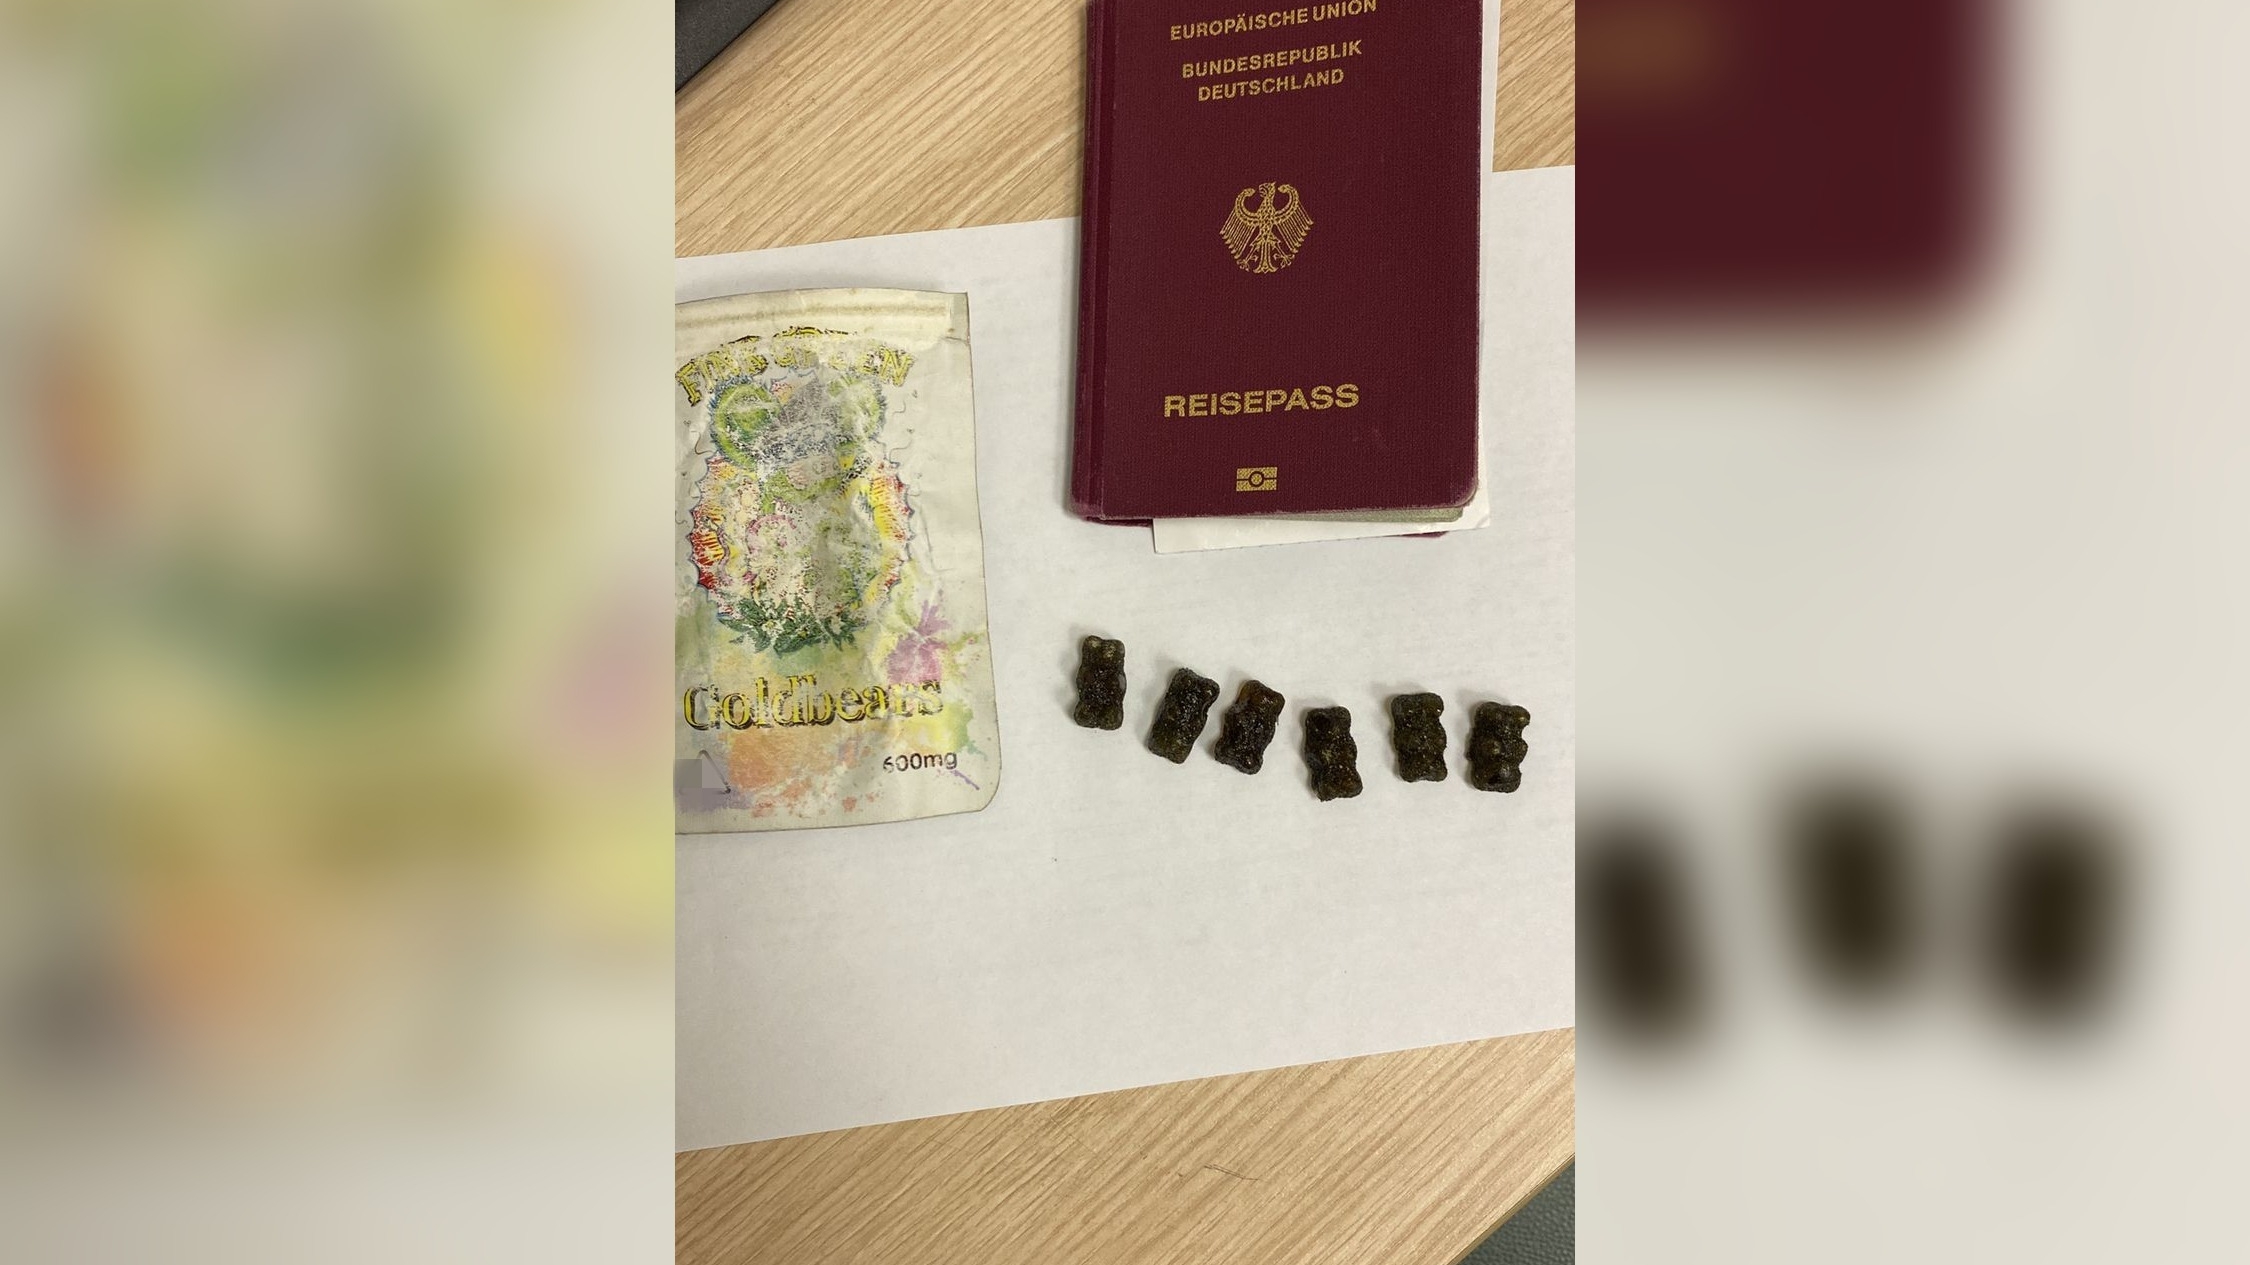 Петербургская таможня не дала добро: иностранцу может грозить срок за незаконные конфеты